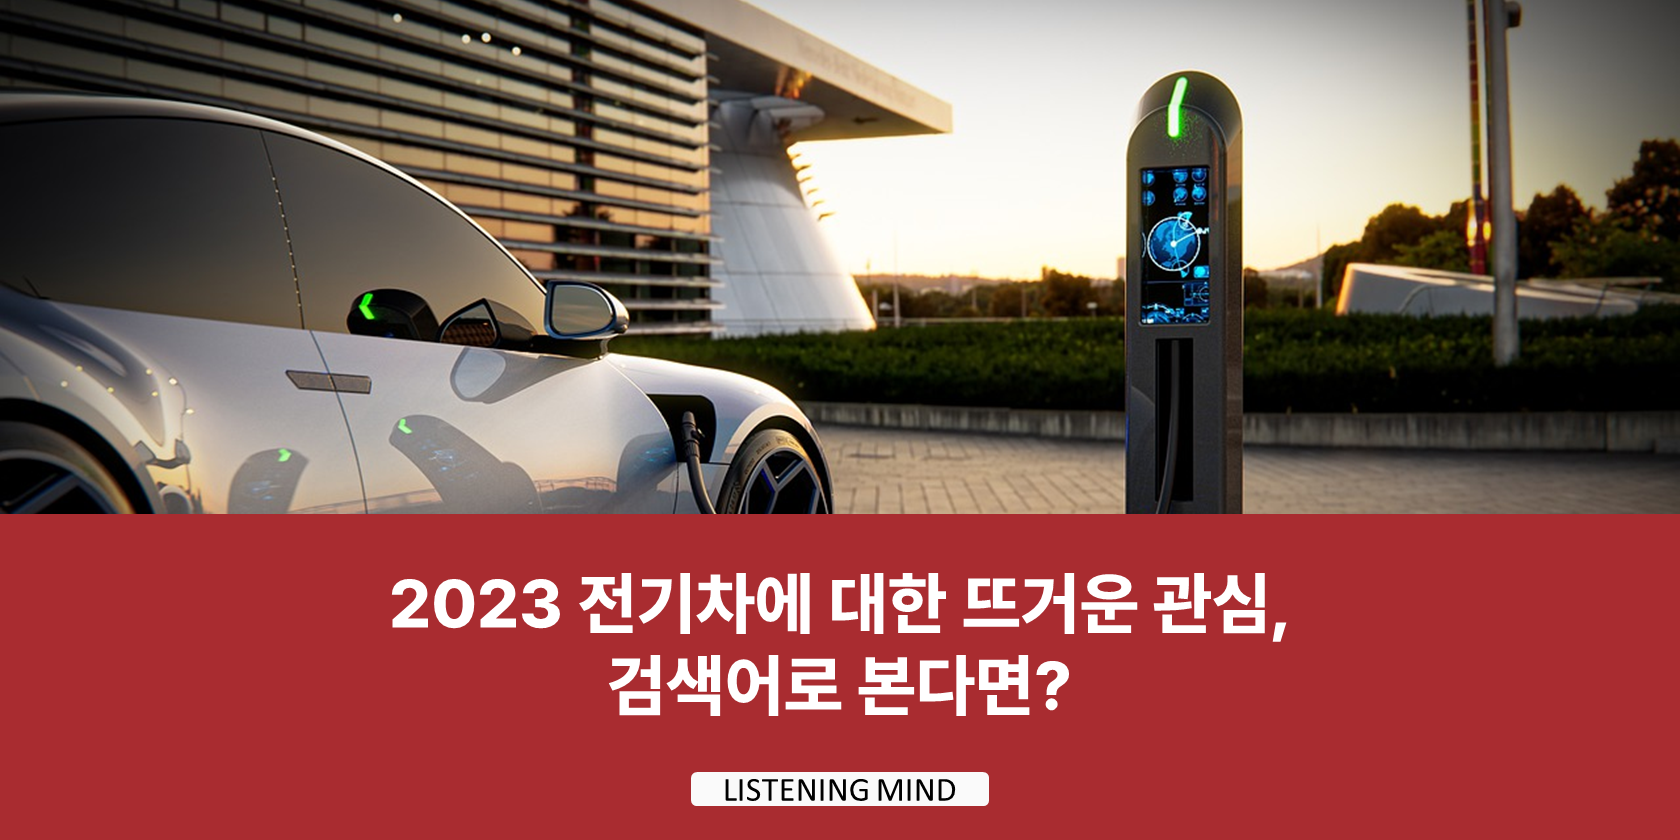 2023 전기차에 대한 뜨거운 관심, 검색어로 본다면?